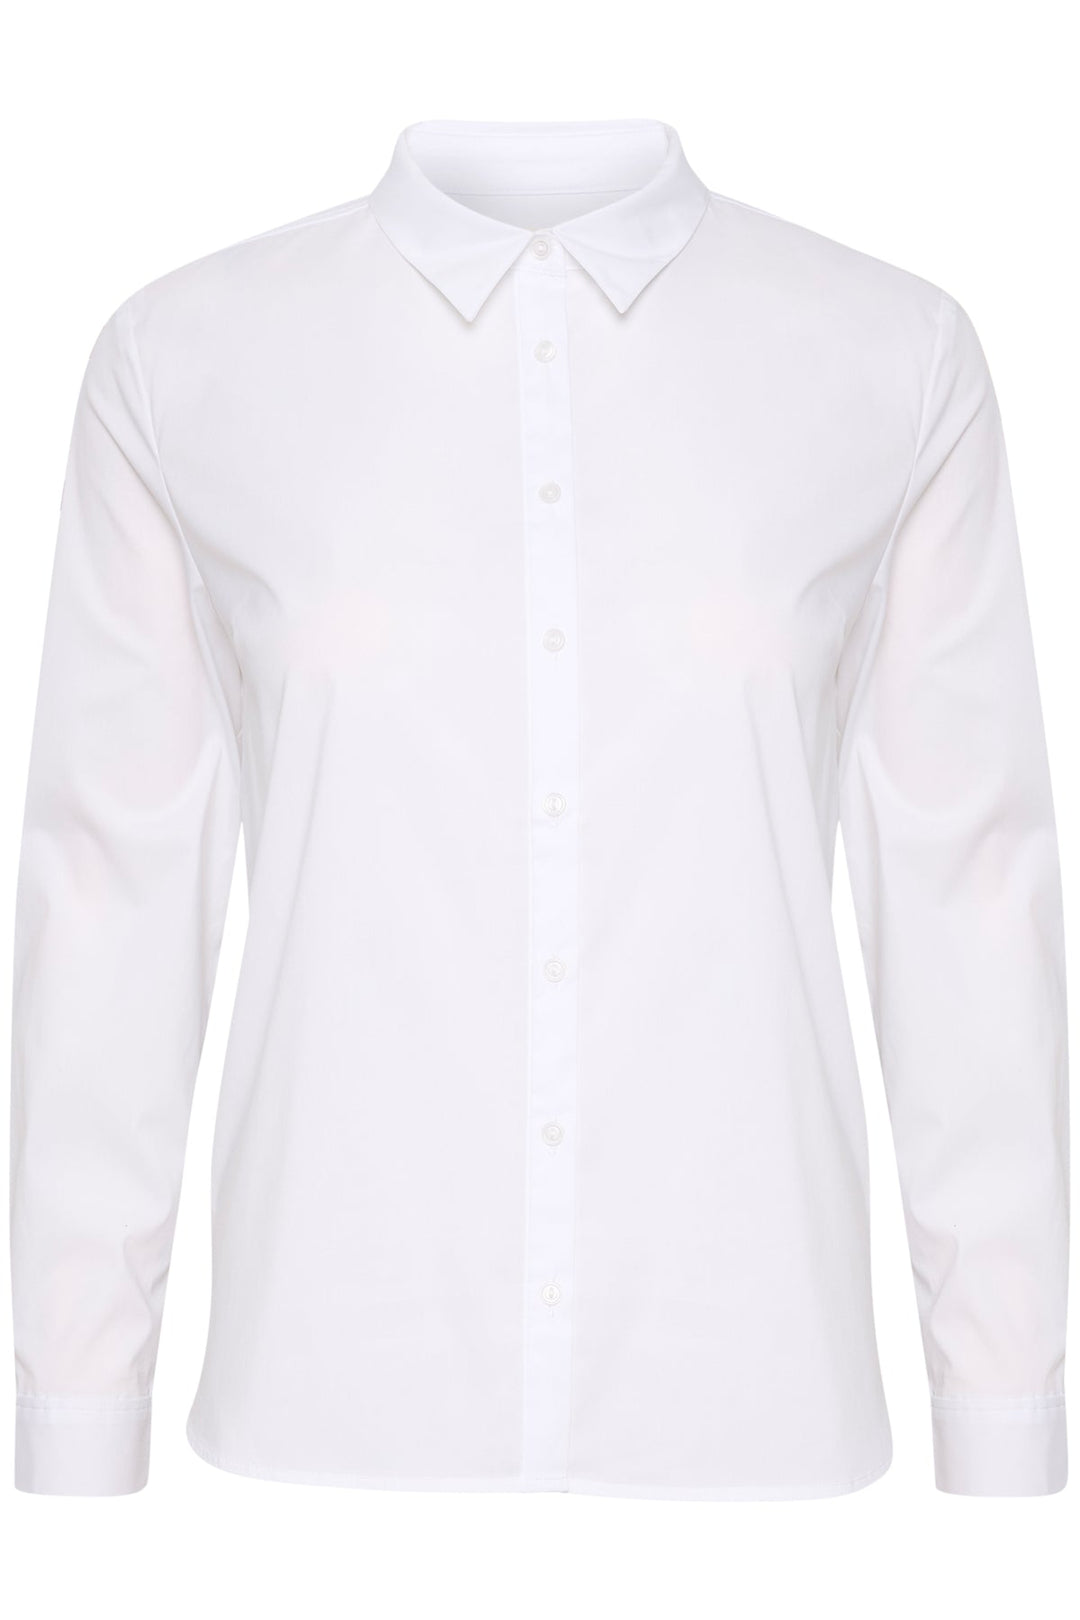 Biminipw Shirt Bright White | Skjorter og bluser | Smuk - Dameklær på nett